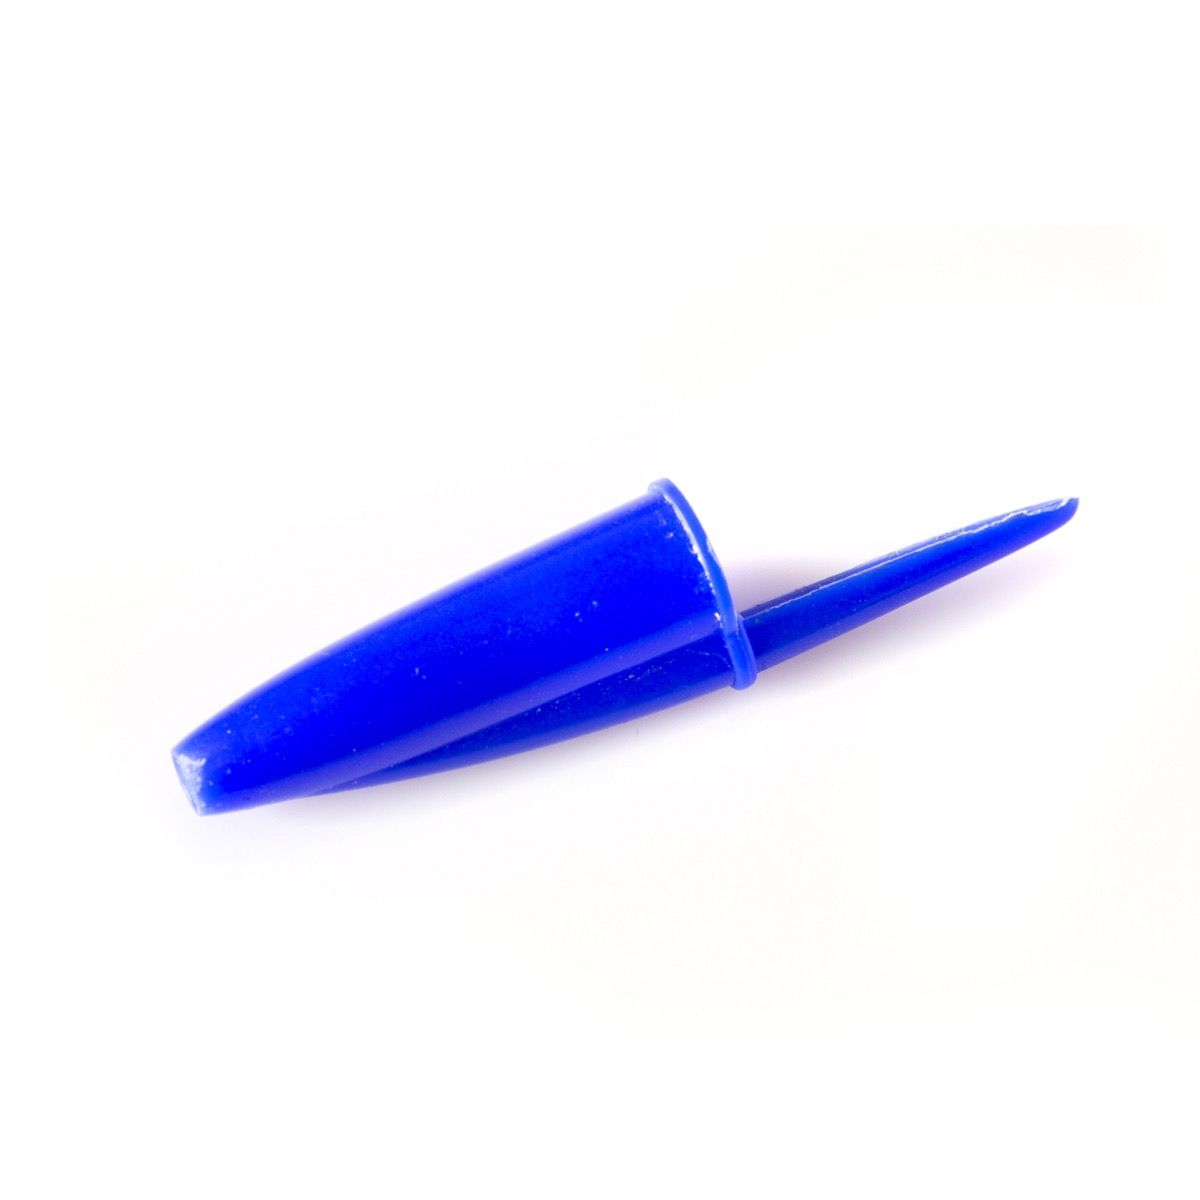 ฝาปากกาสีน้ำเงิน